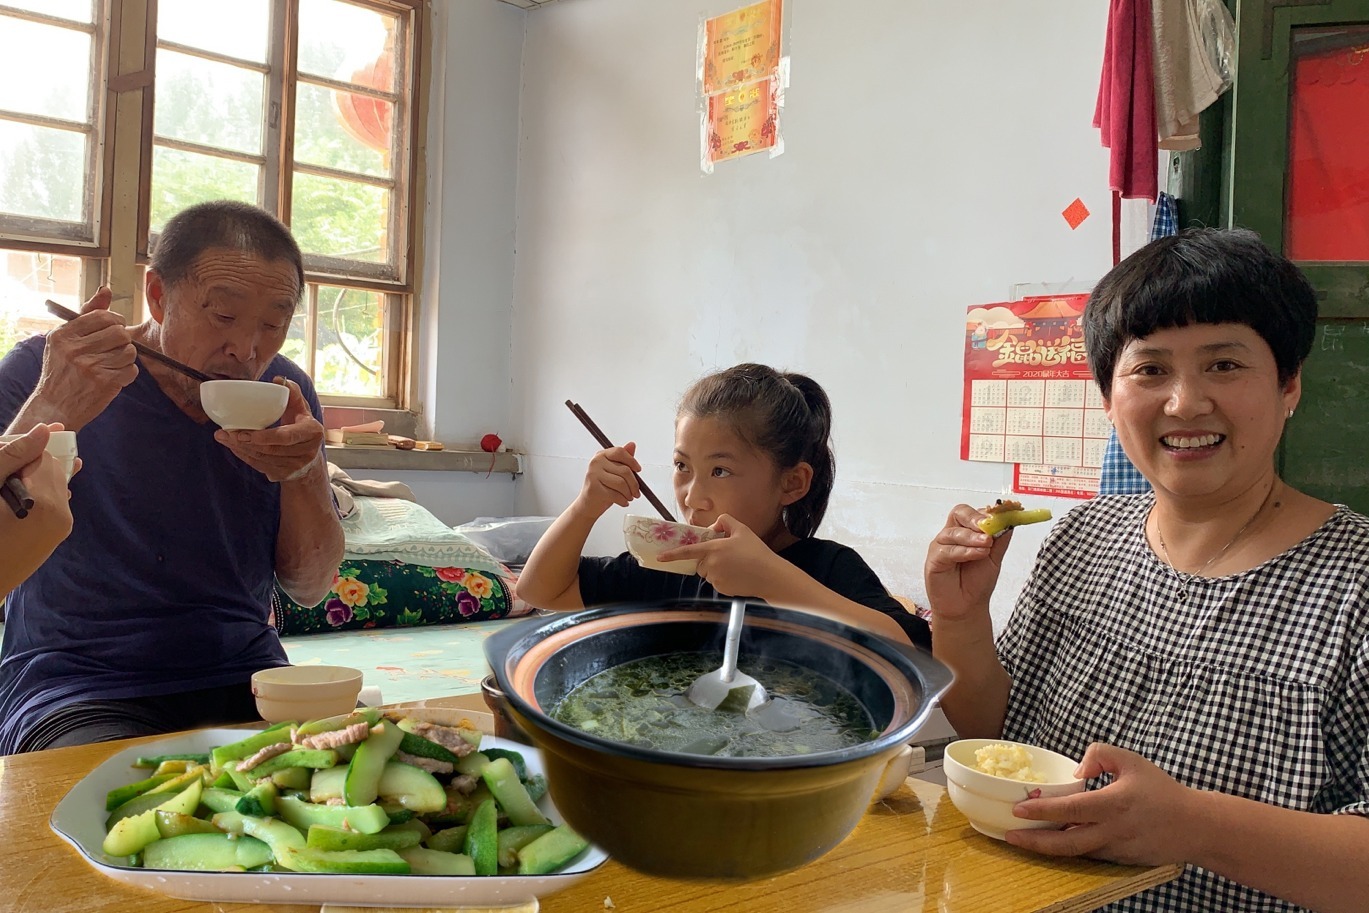 小男孩吃妈妈做的饭-蓝牛仔影像-中国原创广告影像素材